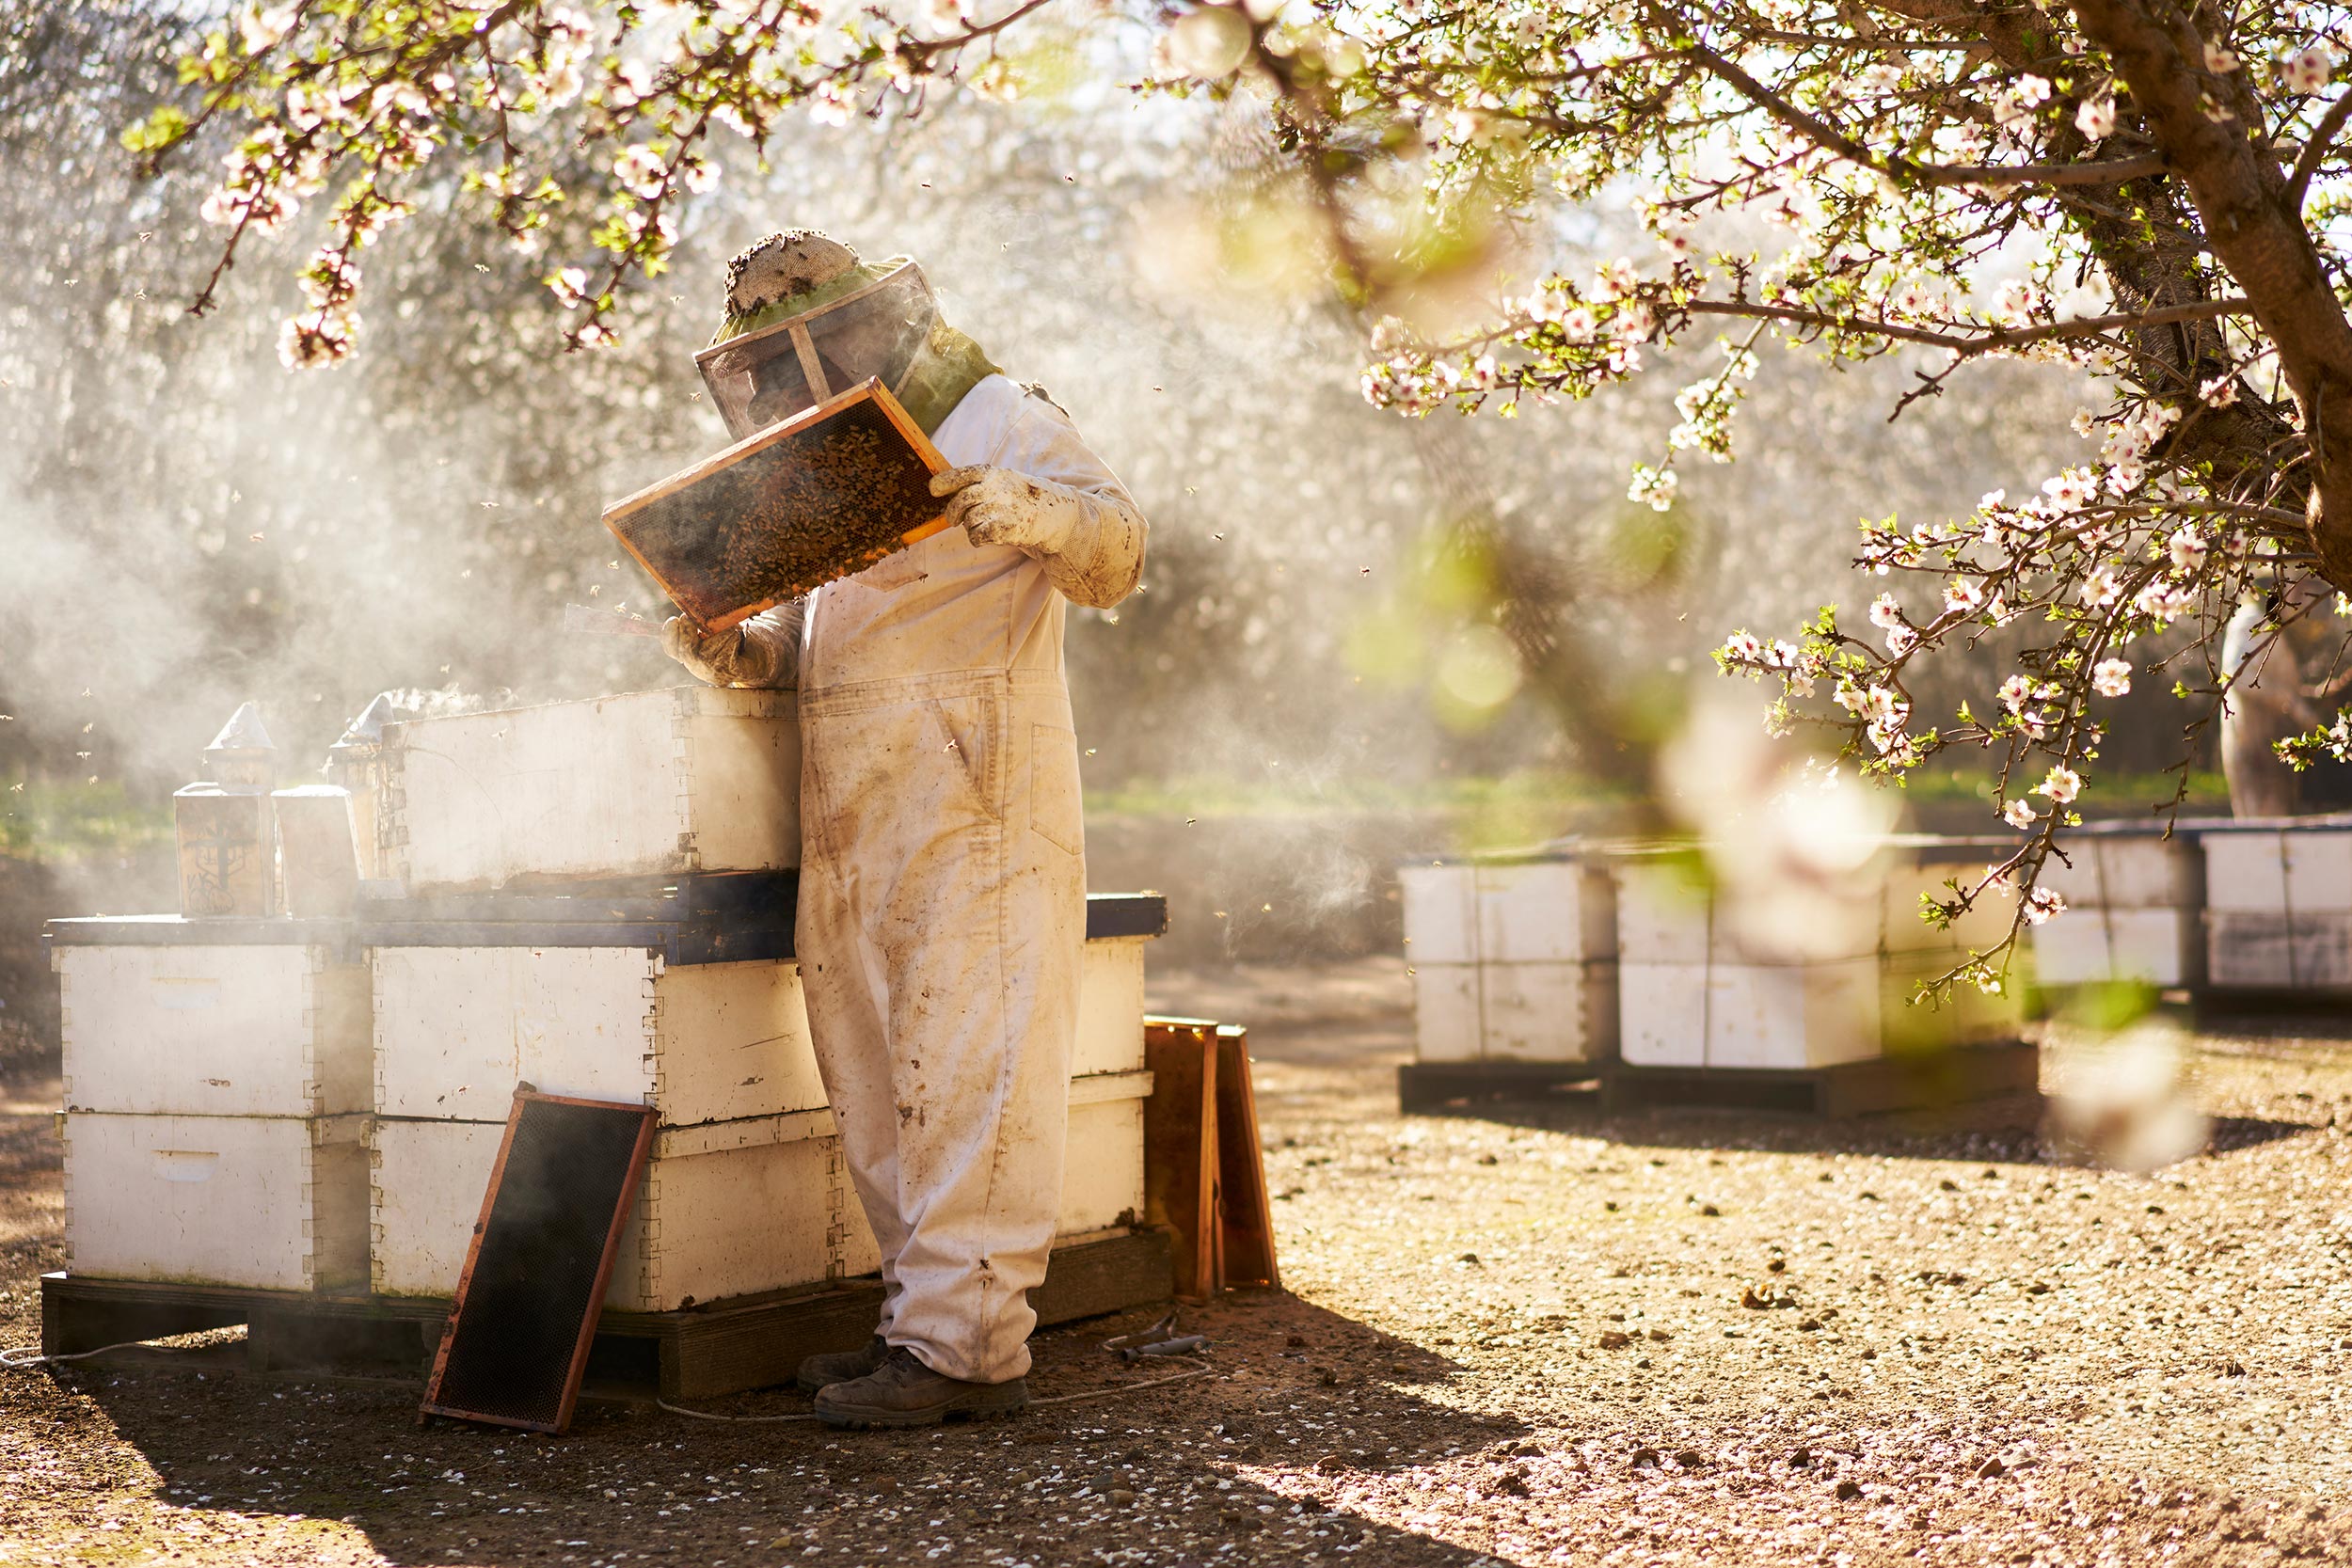 steve--work-almond_bloom0982-beekeeping-crop